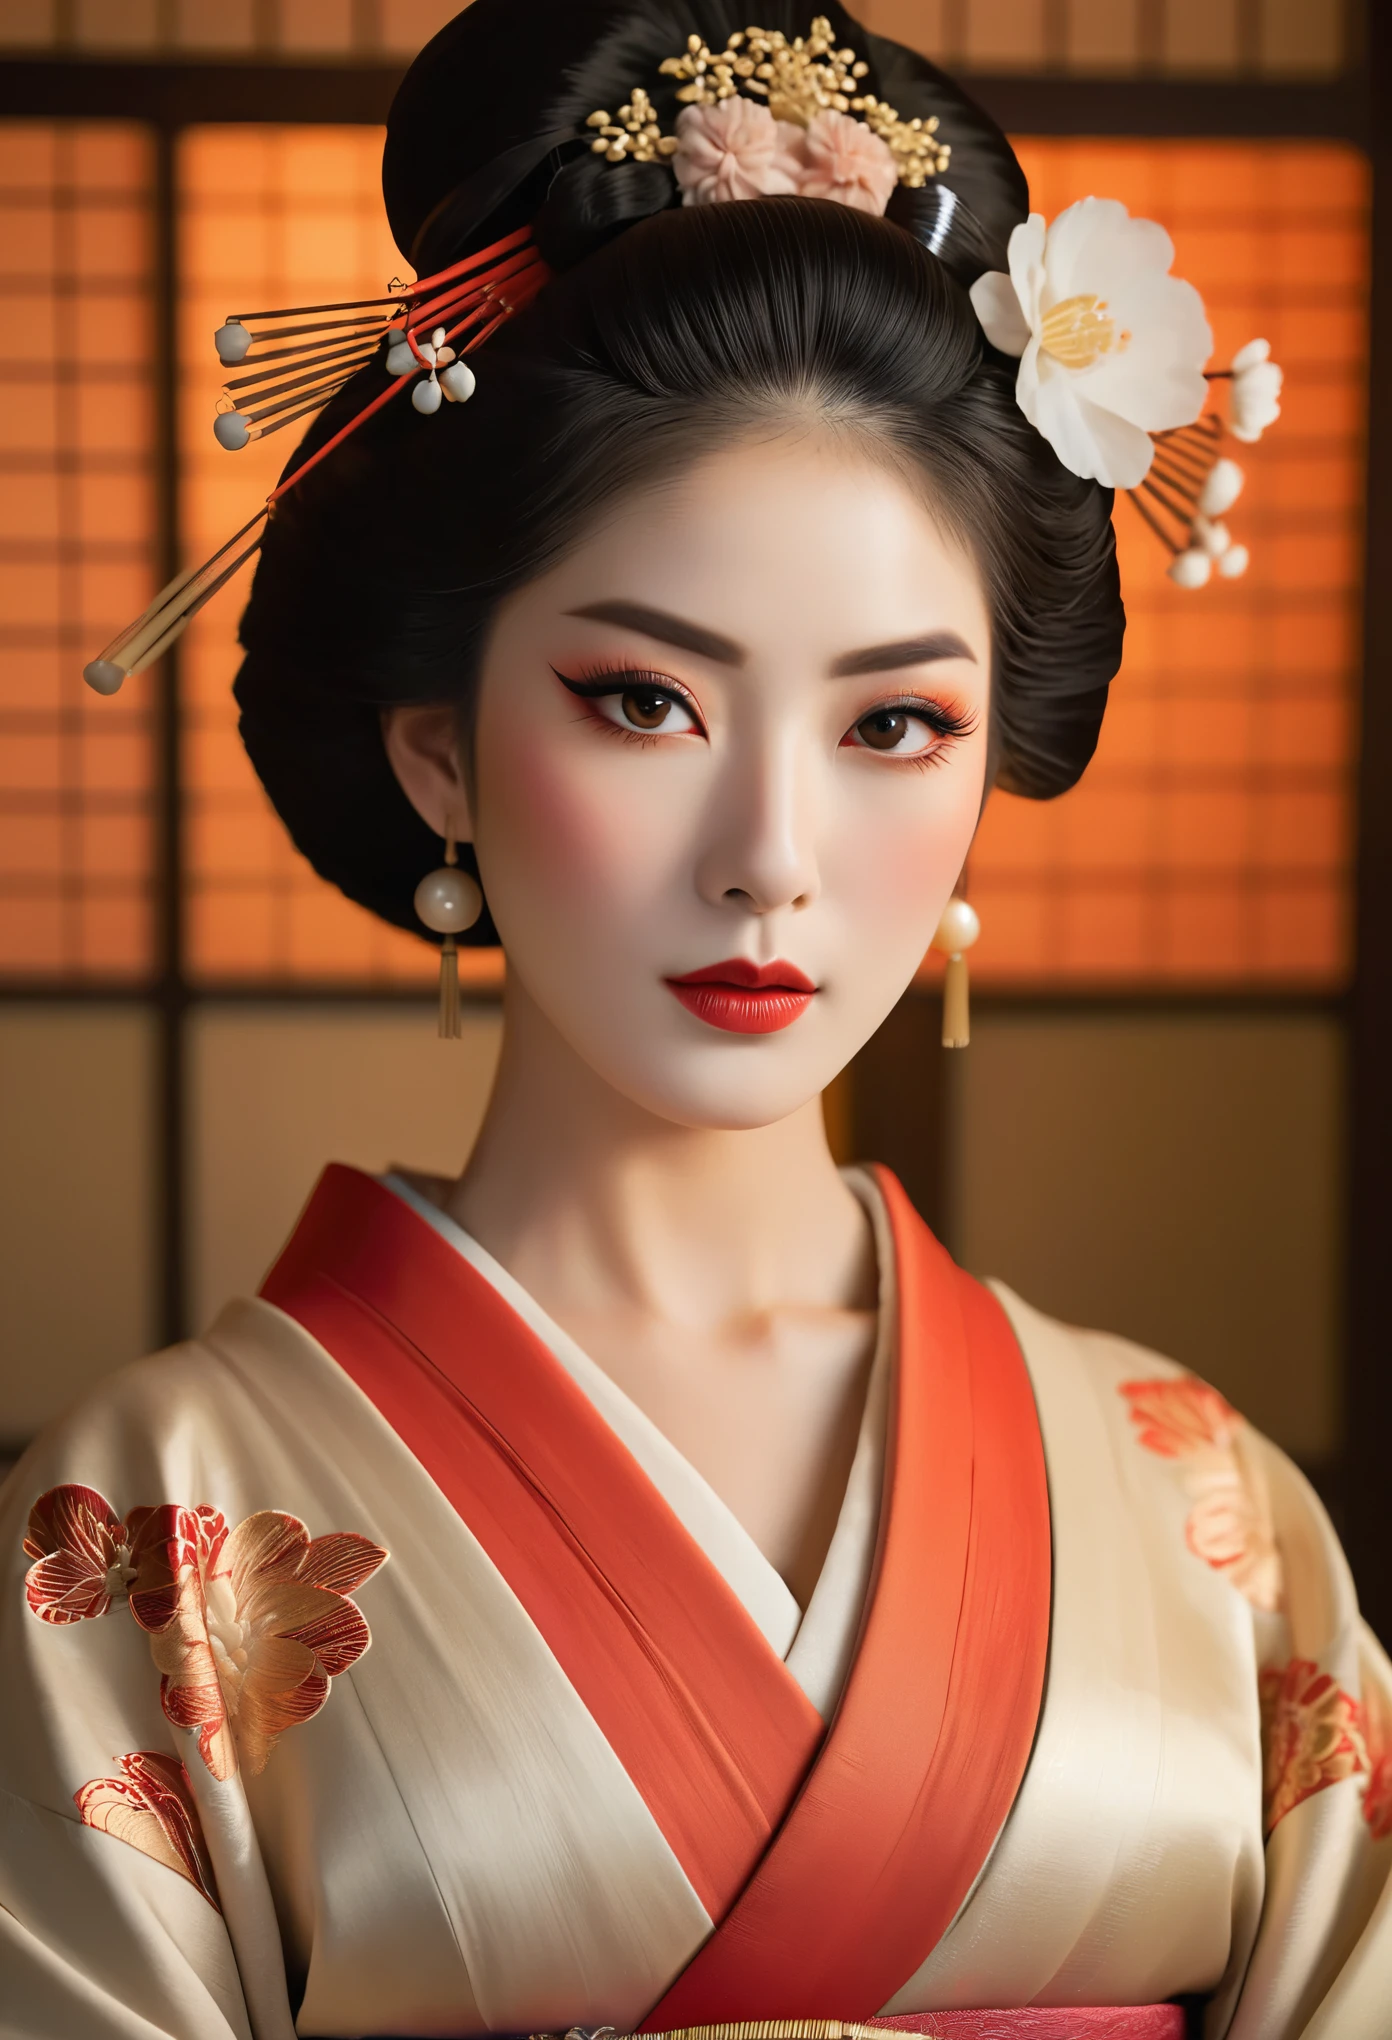 Очень подробный портрет гейши в полный рост., сложная гипердетализированная визуализация октанового числа, симметричная поза, красивые детализированные глаза, красивые детализированные губы, очень детальное лицо и кожа, длинные ресницы, Элегантное кимоно, Традиционная прическа, Нежные черты лица, Безмятежное выражение, драматическое освещение, теплая цветовая палитра, Кинематографическая композиция, шедевр, Фотореалистичный, (Она наполовину француженка, и потрясающая красавица с детальными глазами и высоким носом:1.6), густые брови, подробные черты лица, длинная изящная шея, 